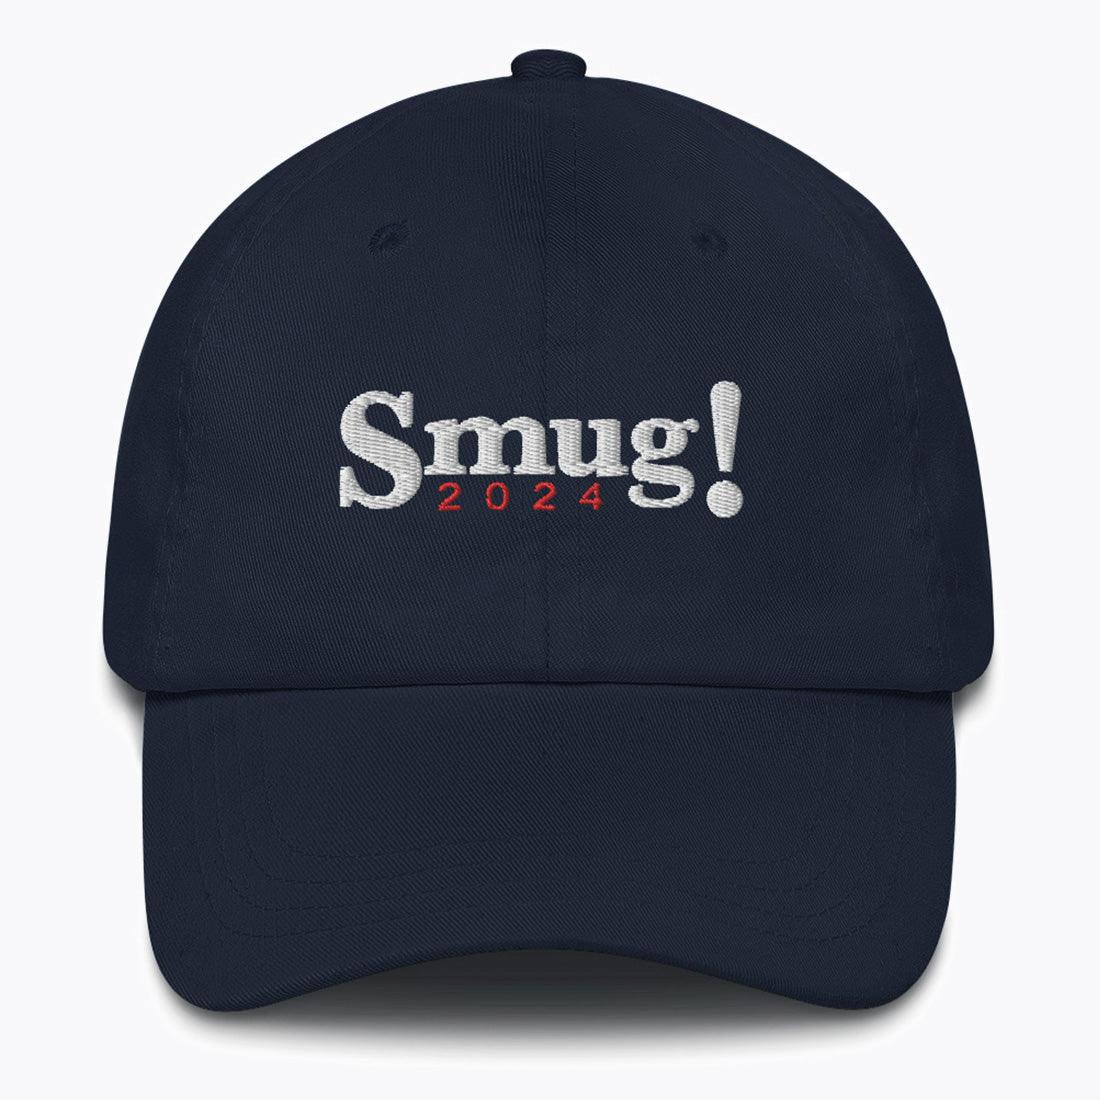 Smug! 2024 hat - Ruthless